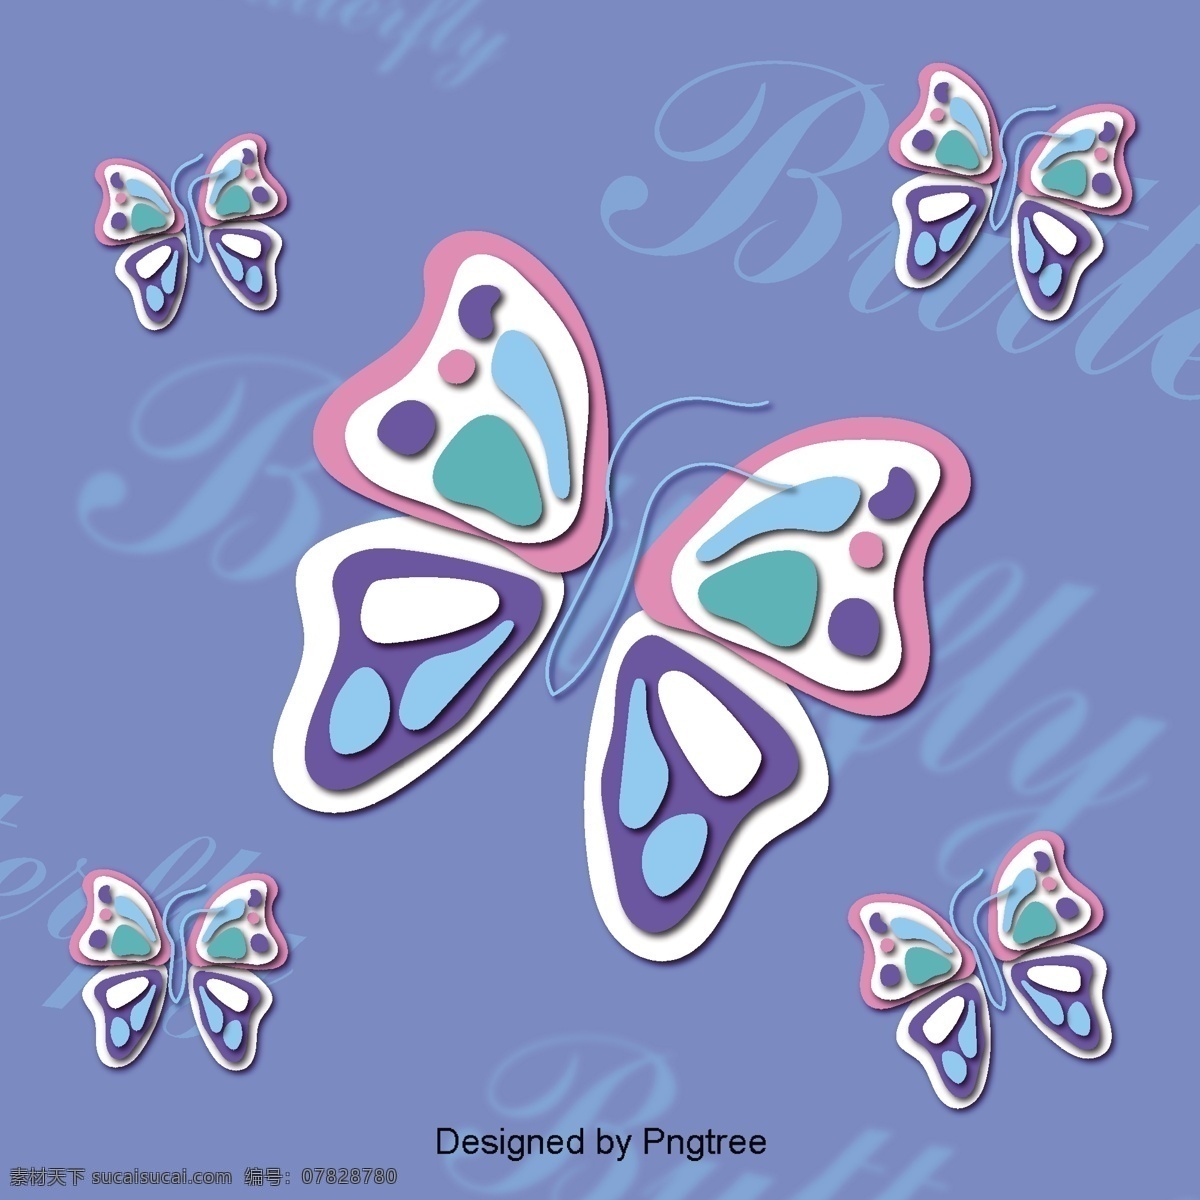 美丽 的卡 通 可爱 手绘 彩色 蝴蝶 翅膀 漂亮 卡通 平面 颜色 幻想 装饰 飞行